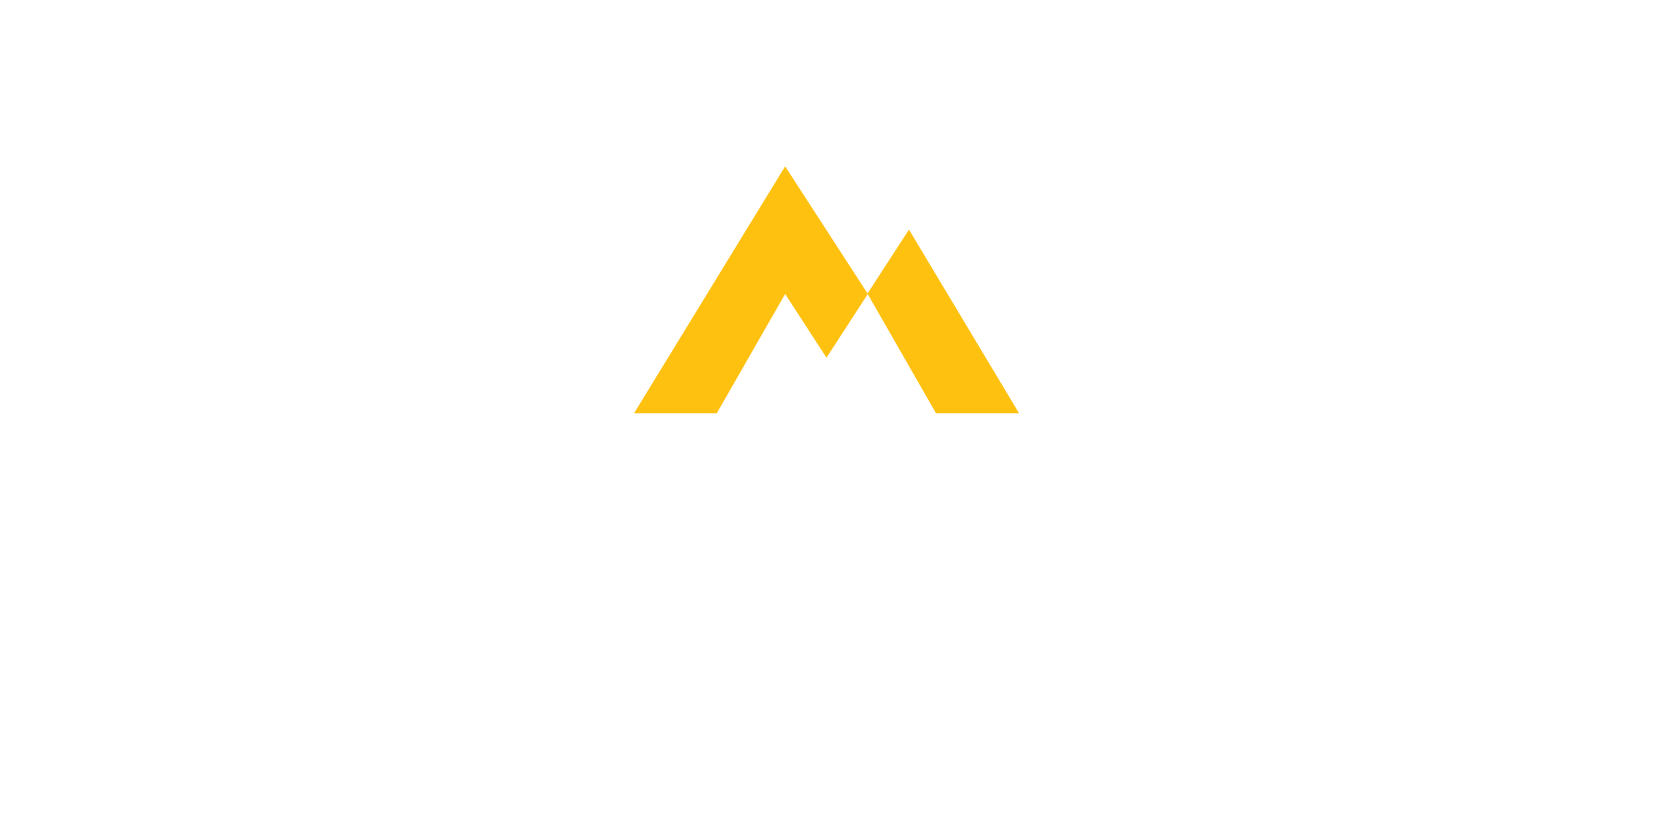 Snow Mountain Logo - Home